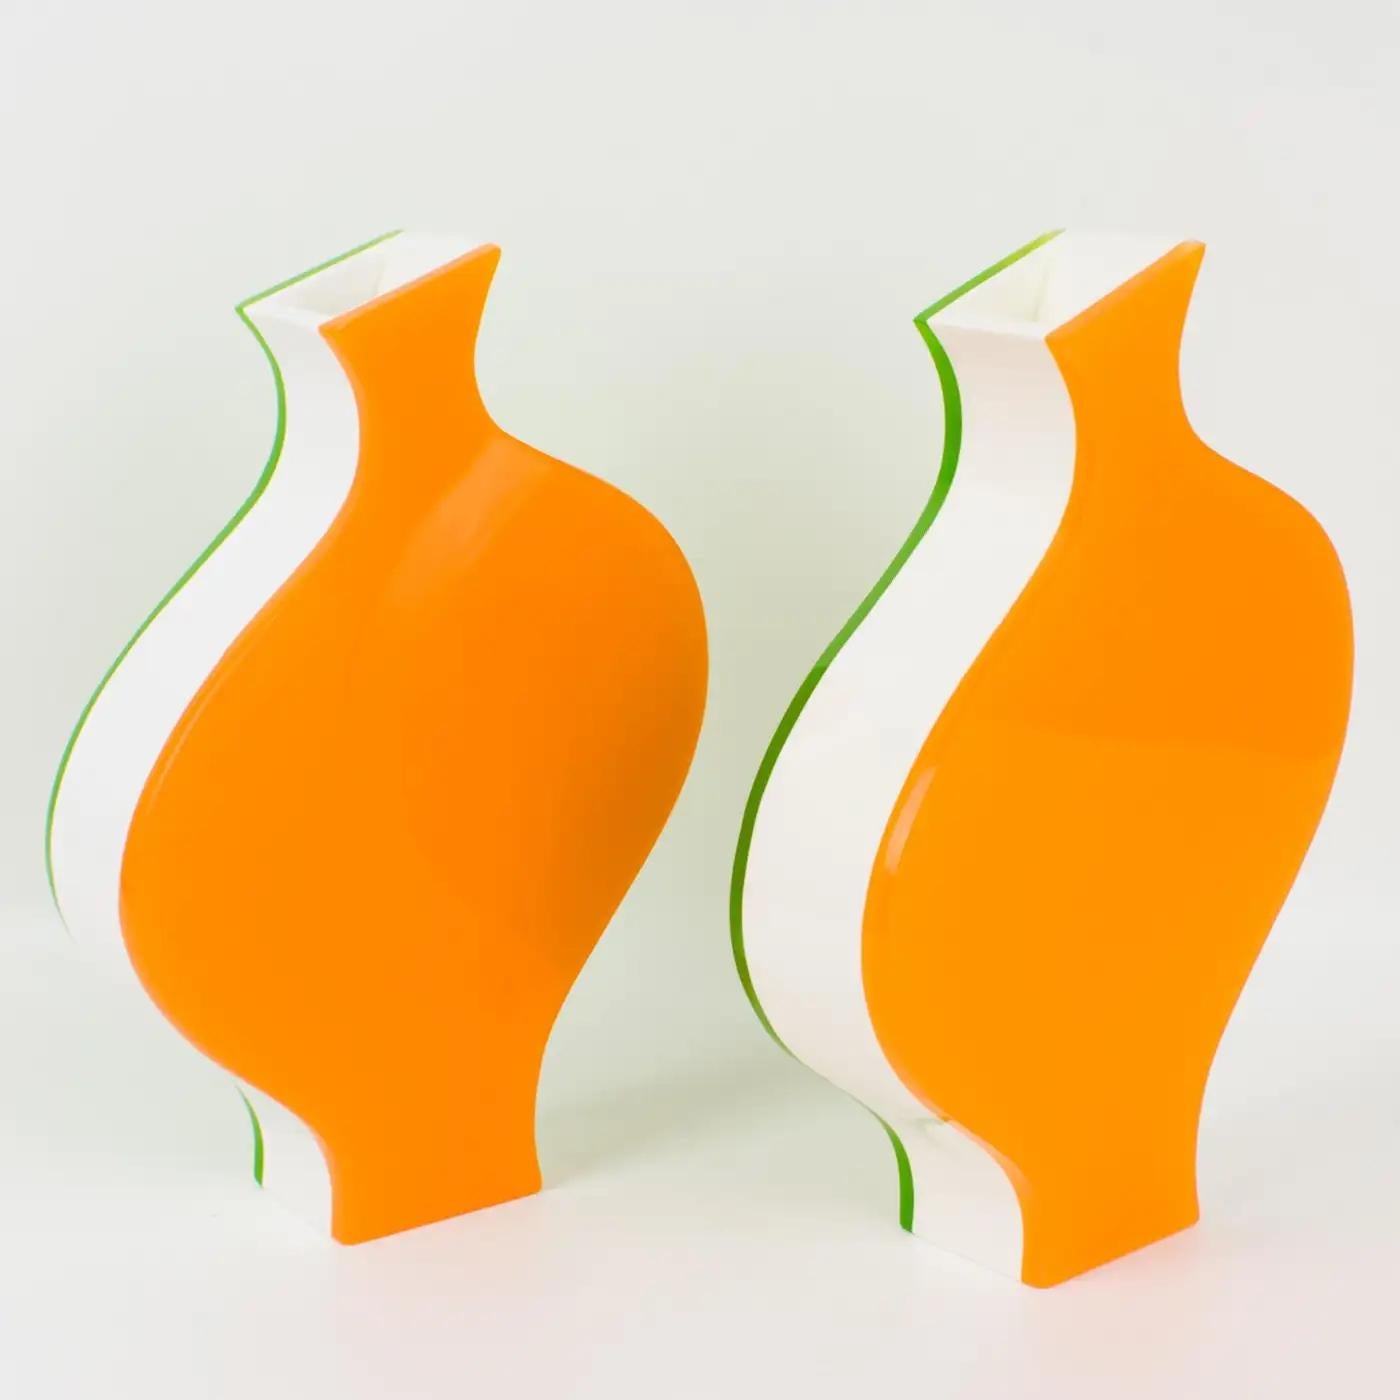 Villeroy & Boch stellte dieses schöne Vasenpaar in den 1990er Jahren her. Dieses verspielte Design ist modern mit einer unglaublichen Farbkombination. Jede Vase besteht aus einer mehrschichtigen Sandwichform aus Acryl, Lucite oder Plexiglas in